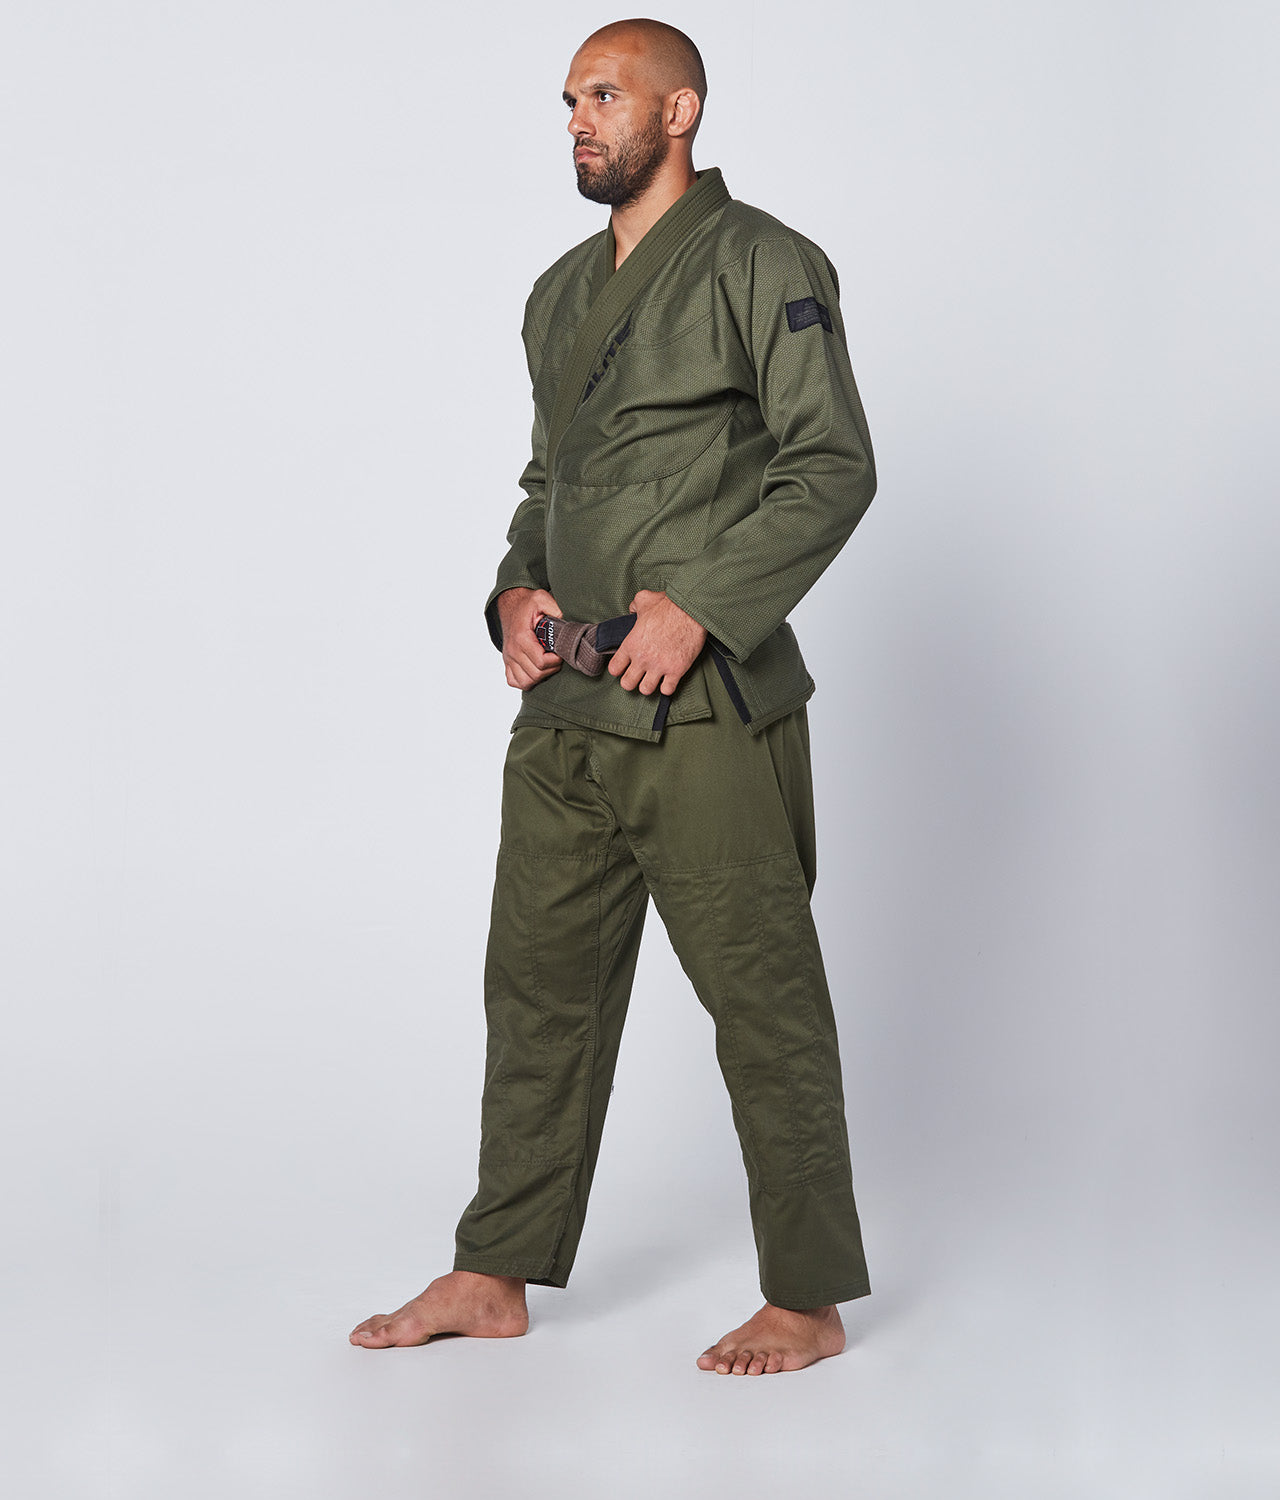 Elite Sports Men's Core Military Green Brazilian Jiu Jitsu BJJ Gi Side View